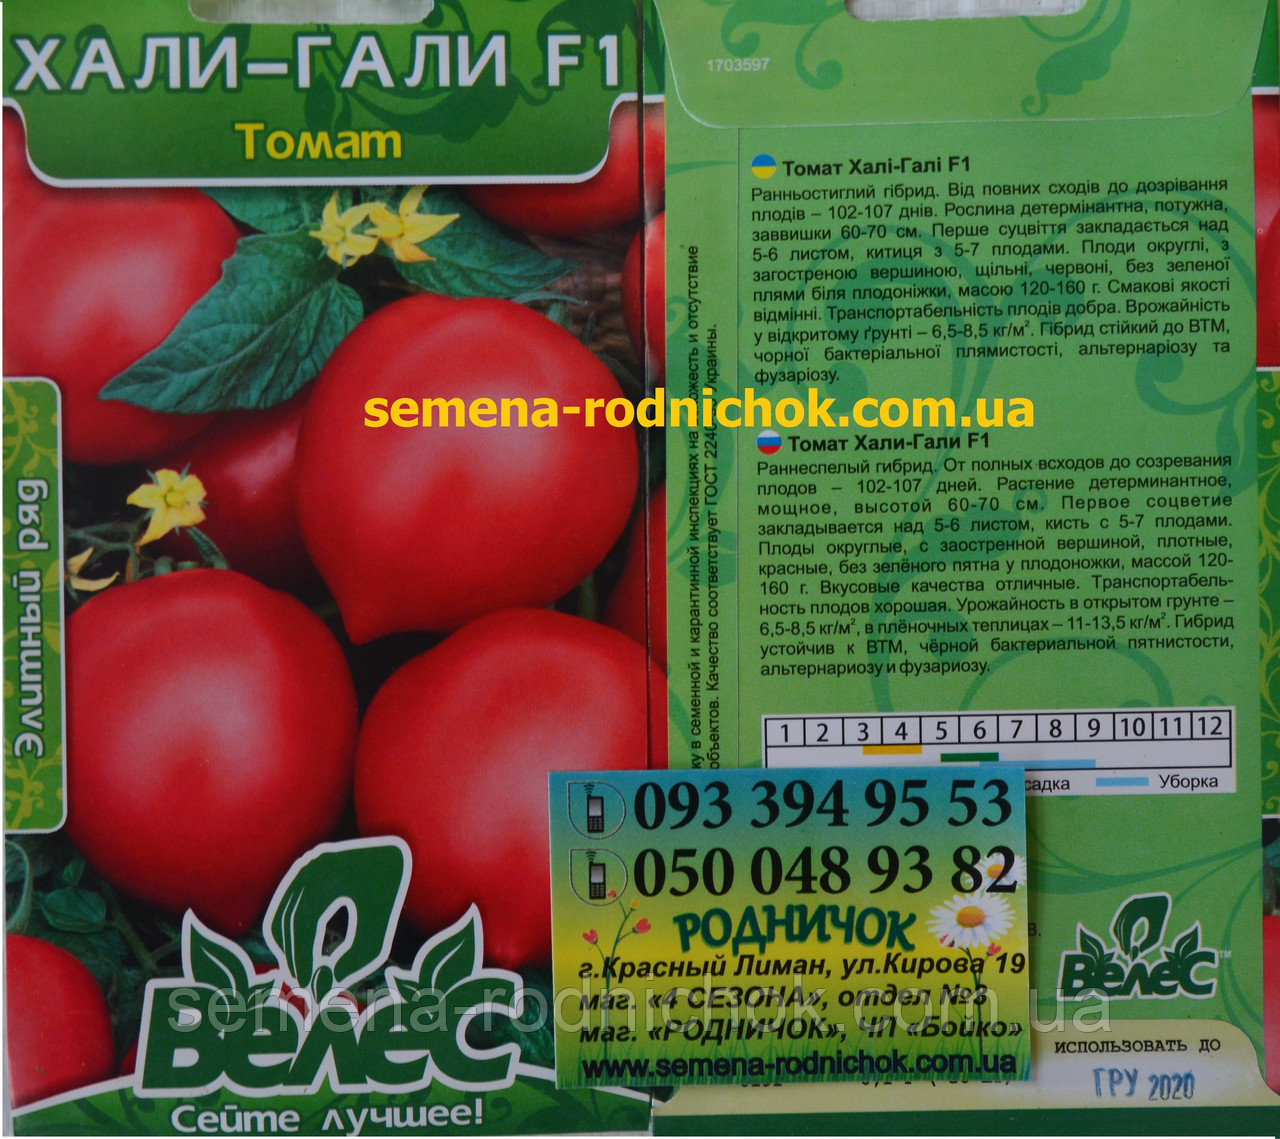 Томат "леопольд": описание гибридного сорта, характеристики помидоров, рекомендации по уходу русский фермер